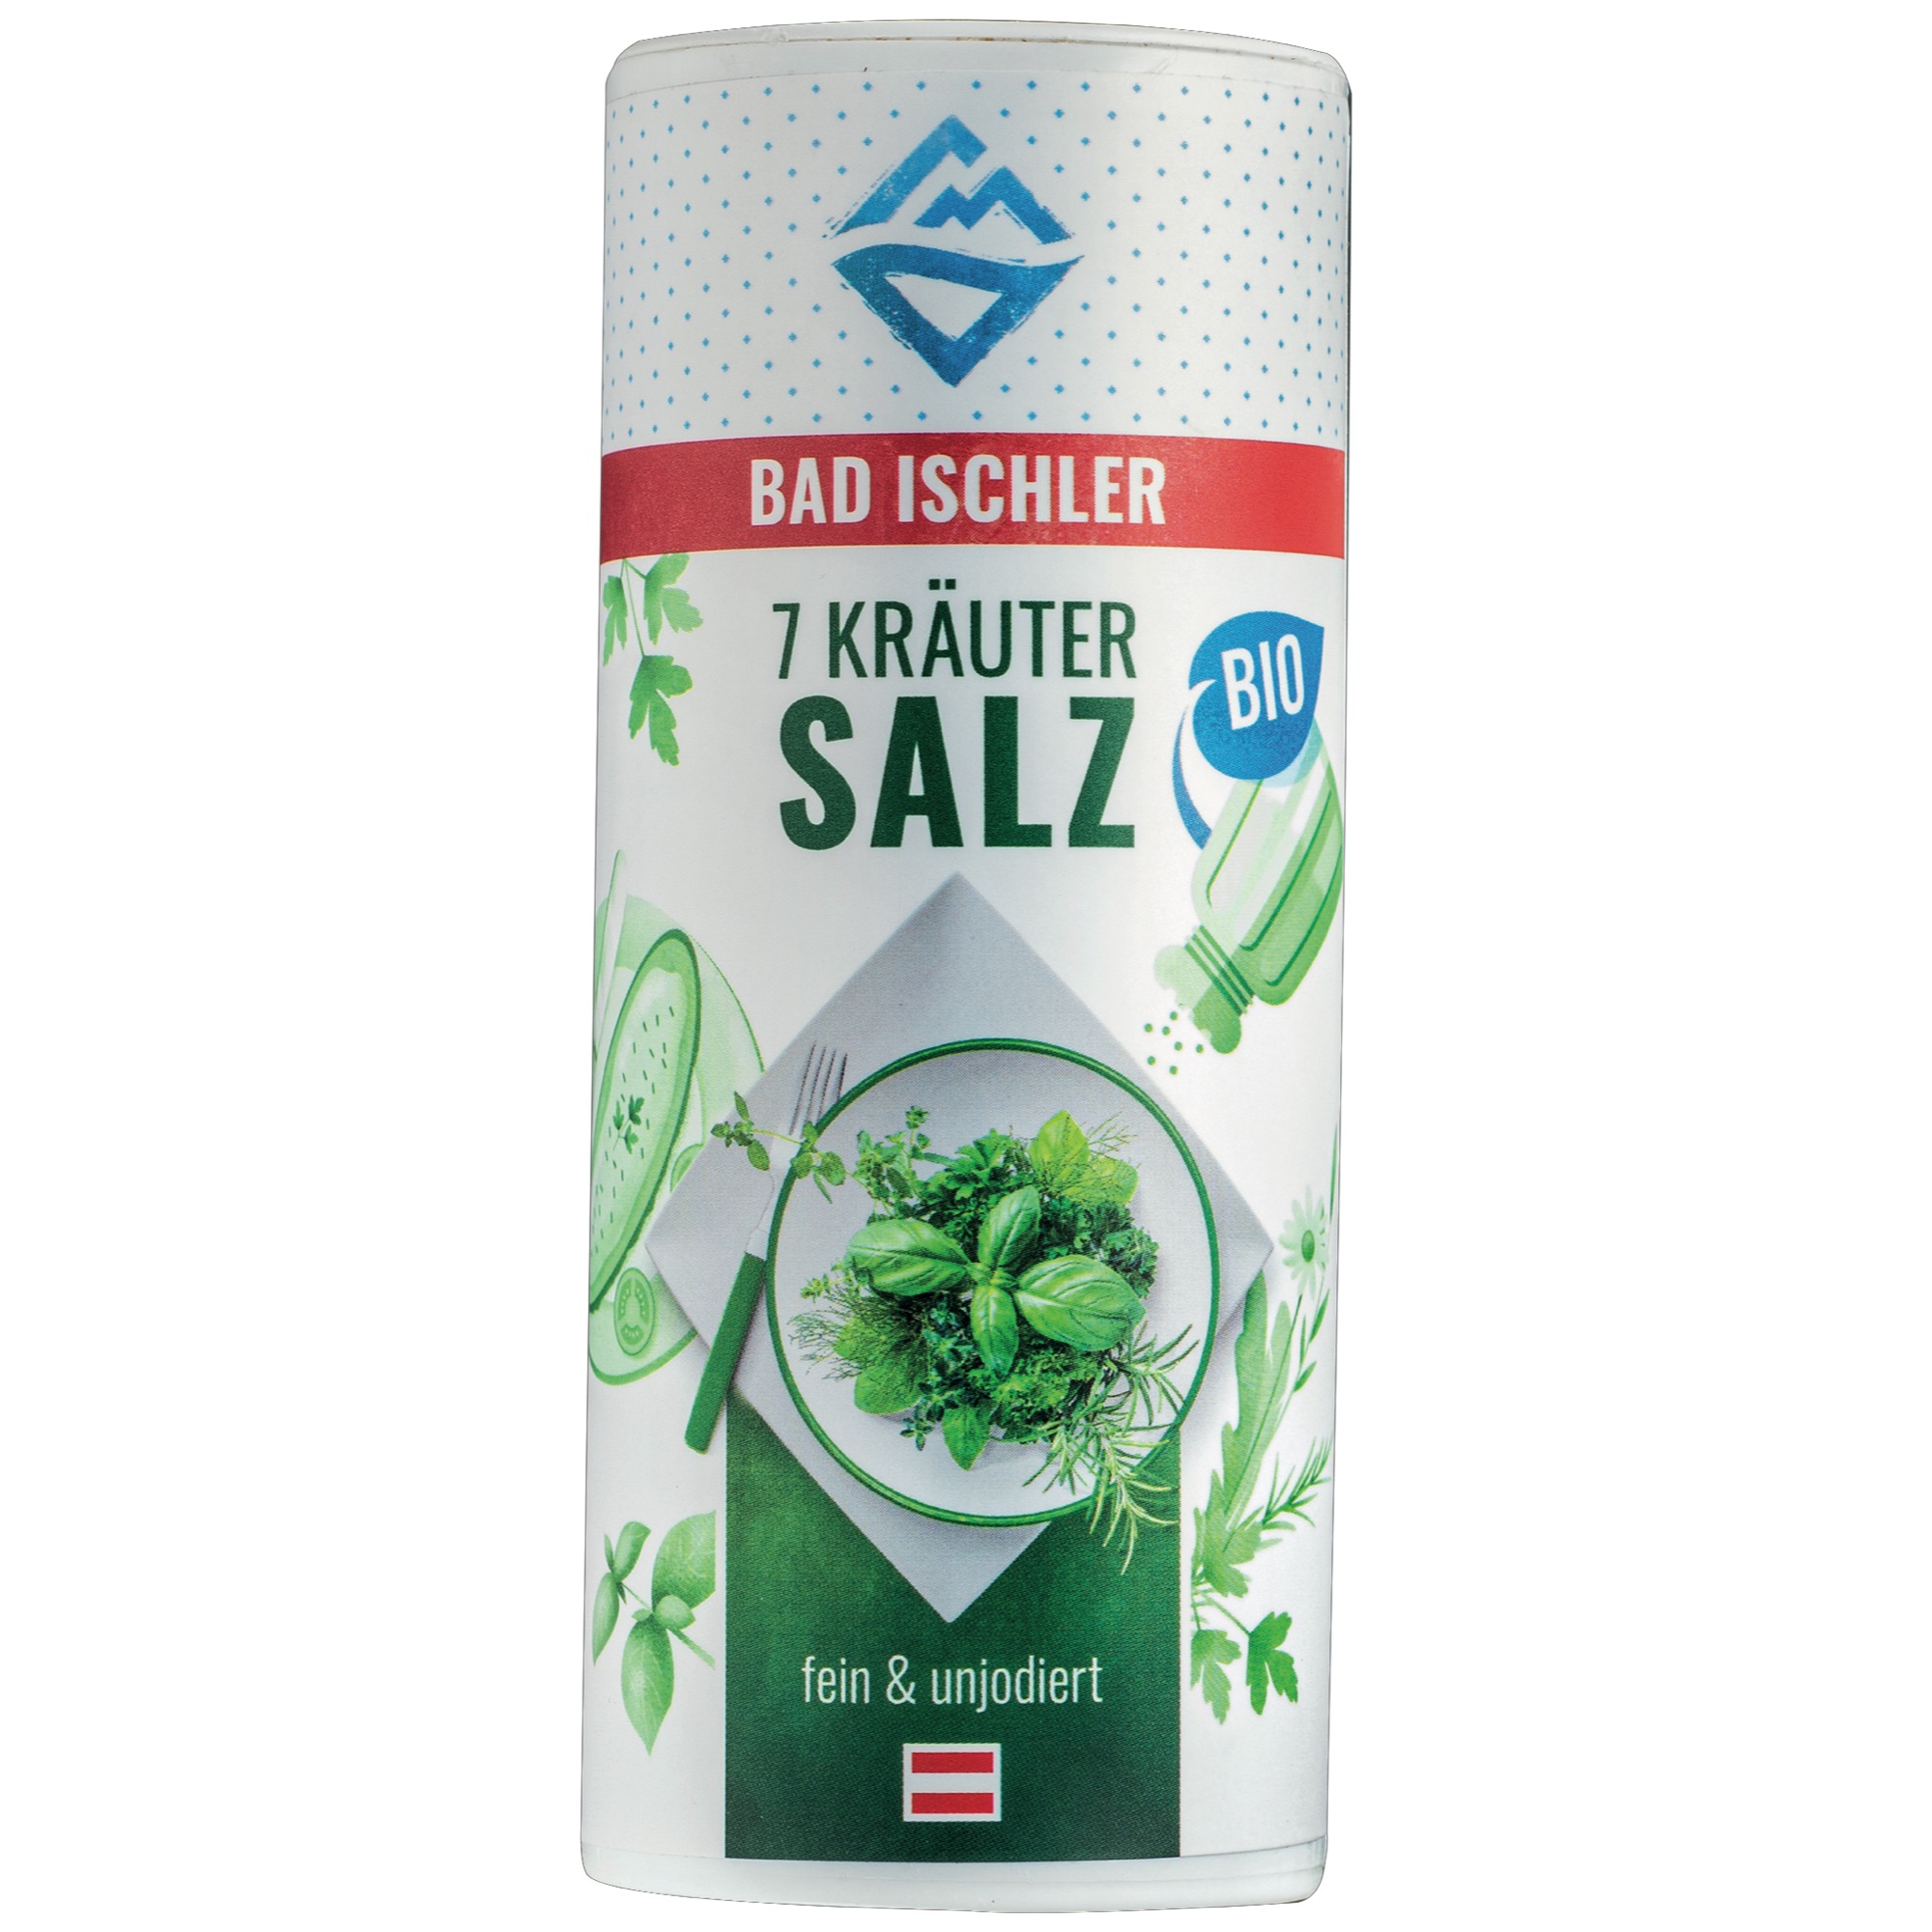 Bad Ischler Bio 7 bylinková soľ 100g